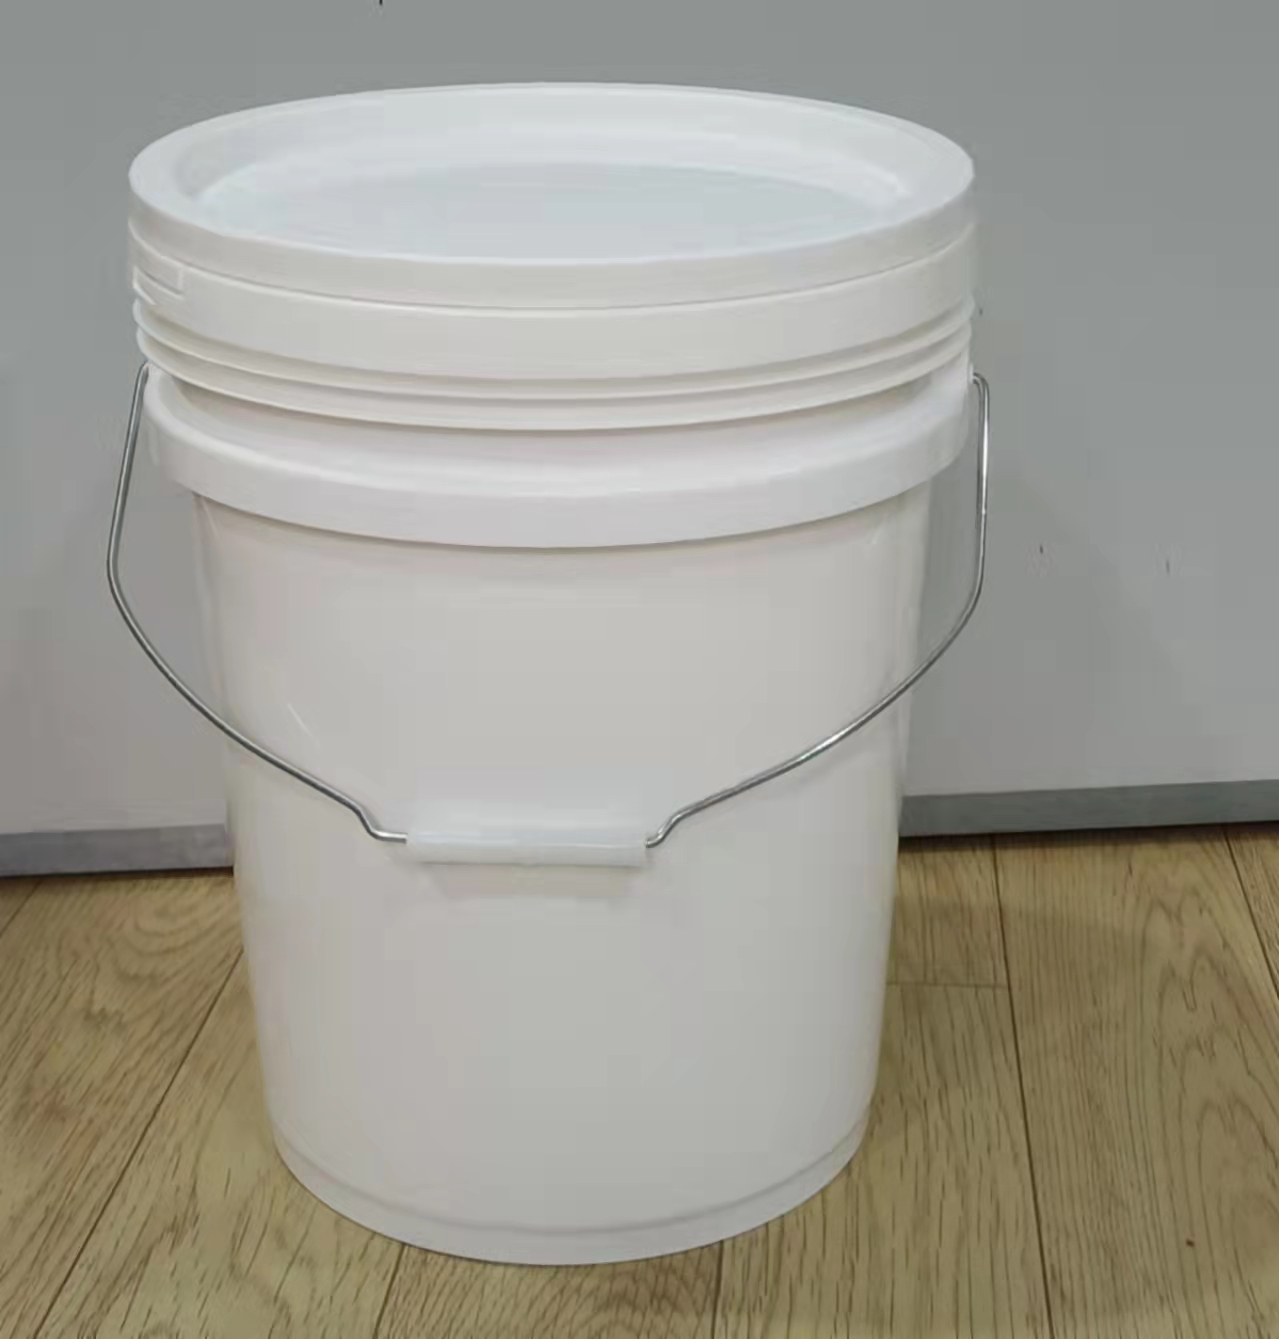 江苏常州阳明塑料定制生产绝缘漆塑料桶